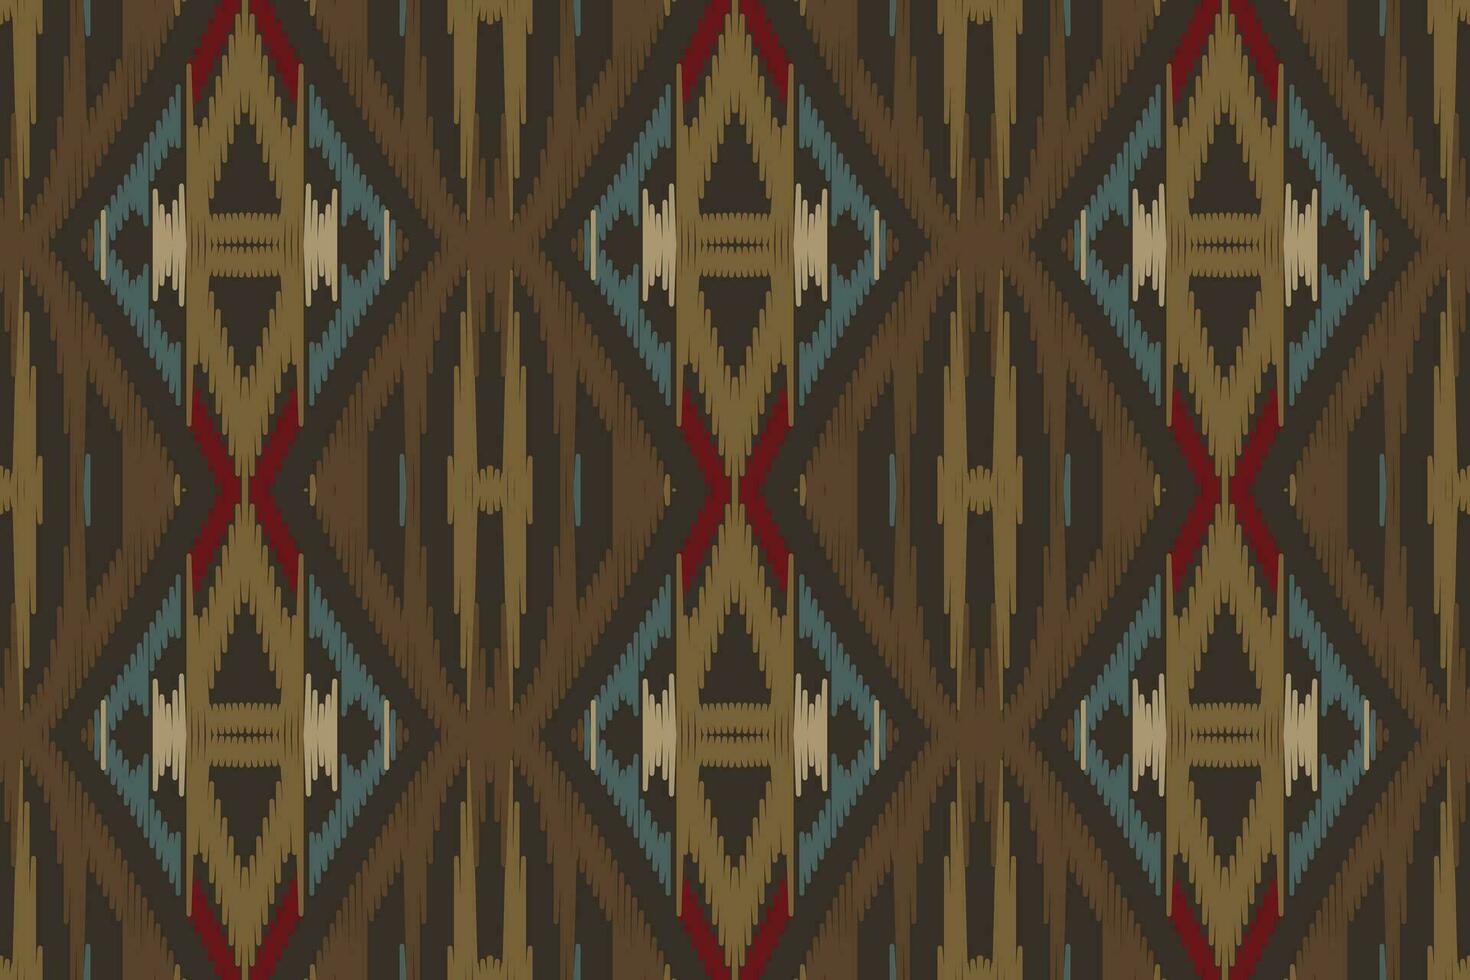 motiv ikat sömlös mönster broderi bakgrund. ikat vektor geometrisk etnisk orientalisk mönster traditionell.aztec stil abstrakt vektor design för textur, tyg, kläder, inslagning, sarong.